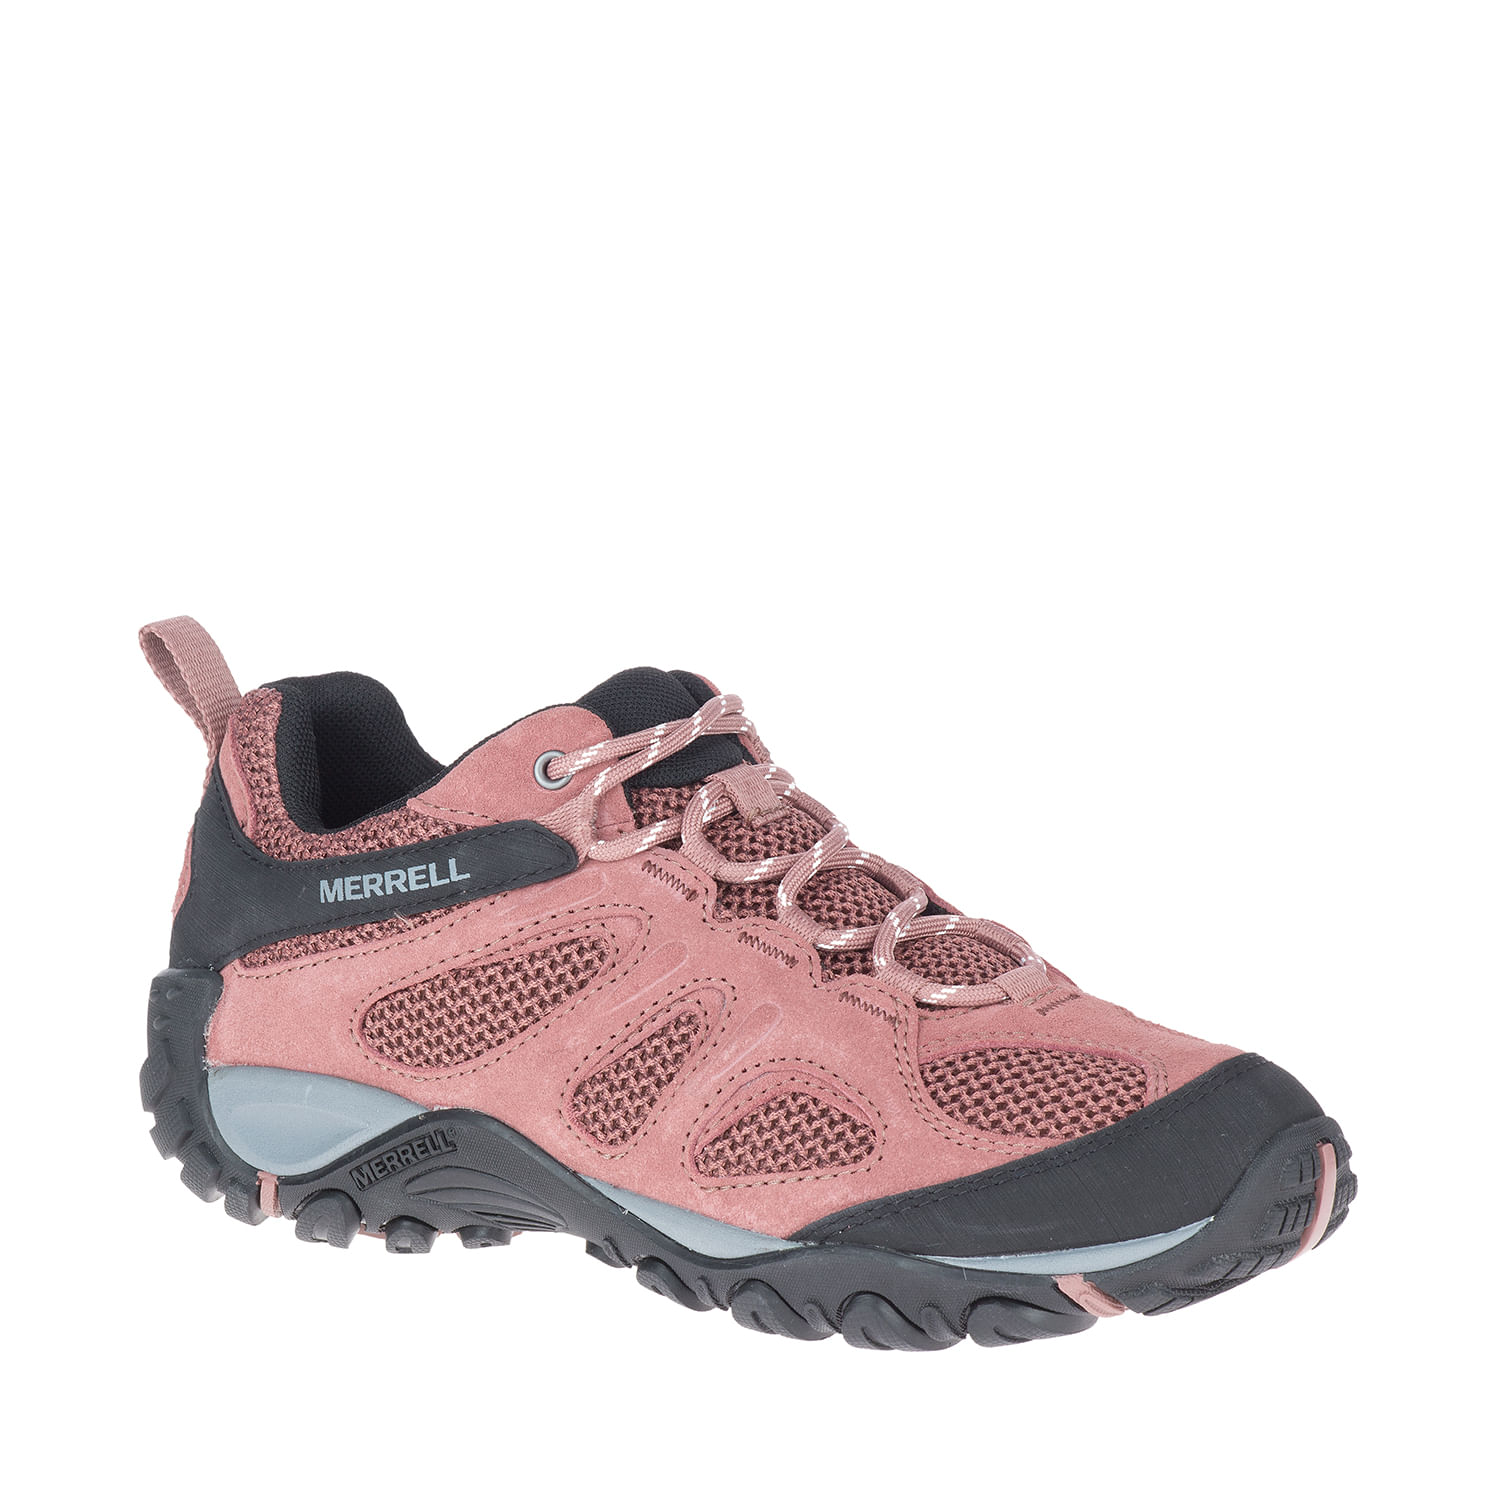 Mujer Yokota 2- Merrell - Zapatos.cl | Sitio Oficial - Encuentra Vestuario, Calzado más